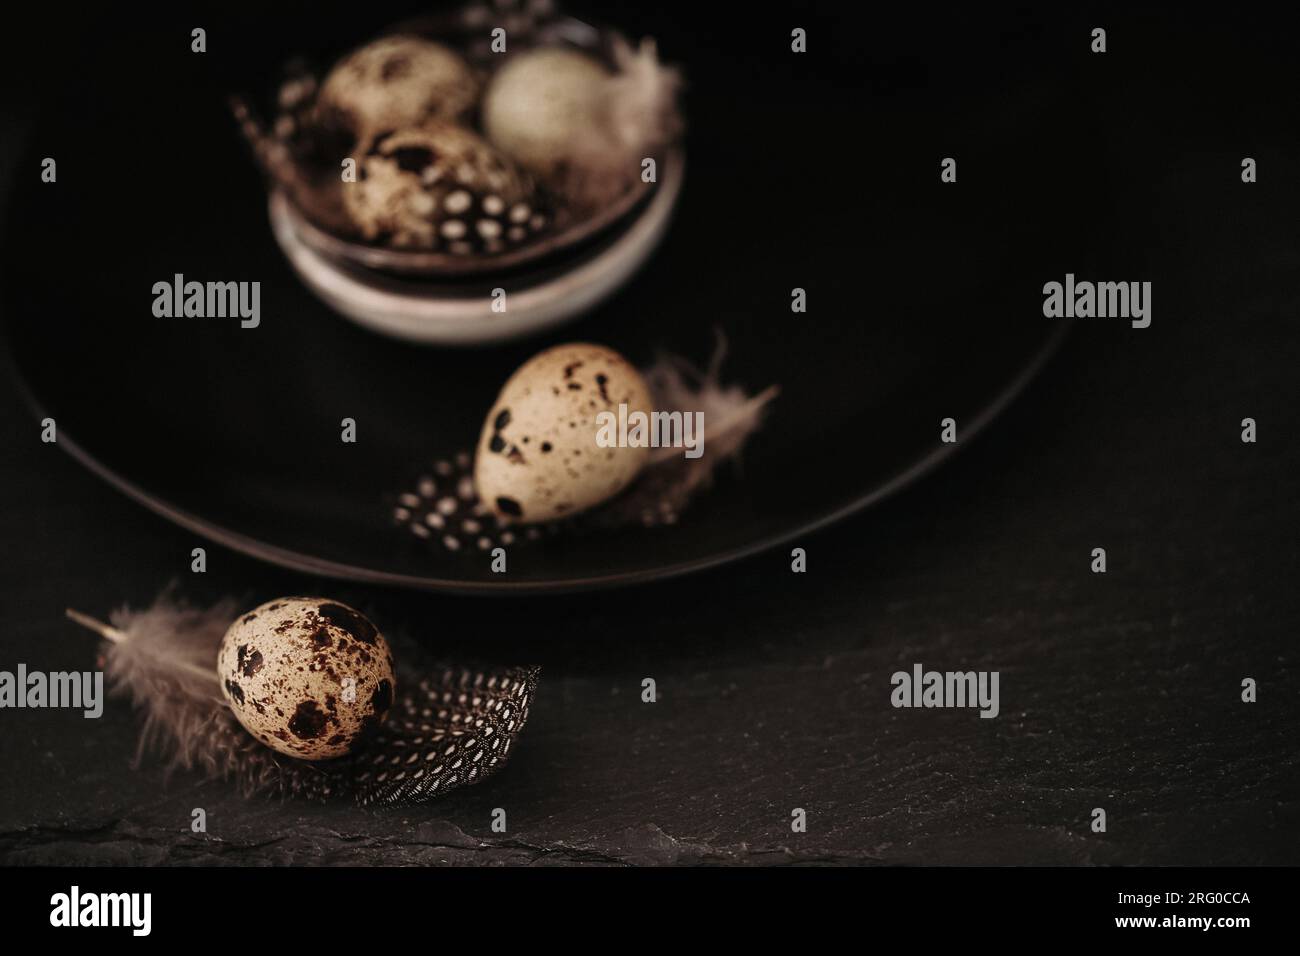 Uova di quaglia di fattoria in un piatto di ceramica su un nero background.Organic uova di quaglia biologica naturale con piume. Cibo sano e utile Foto Stock